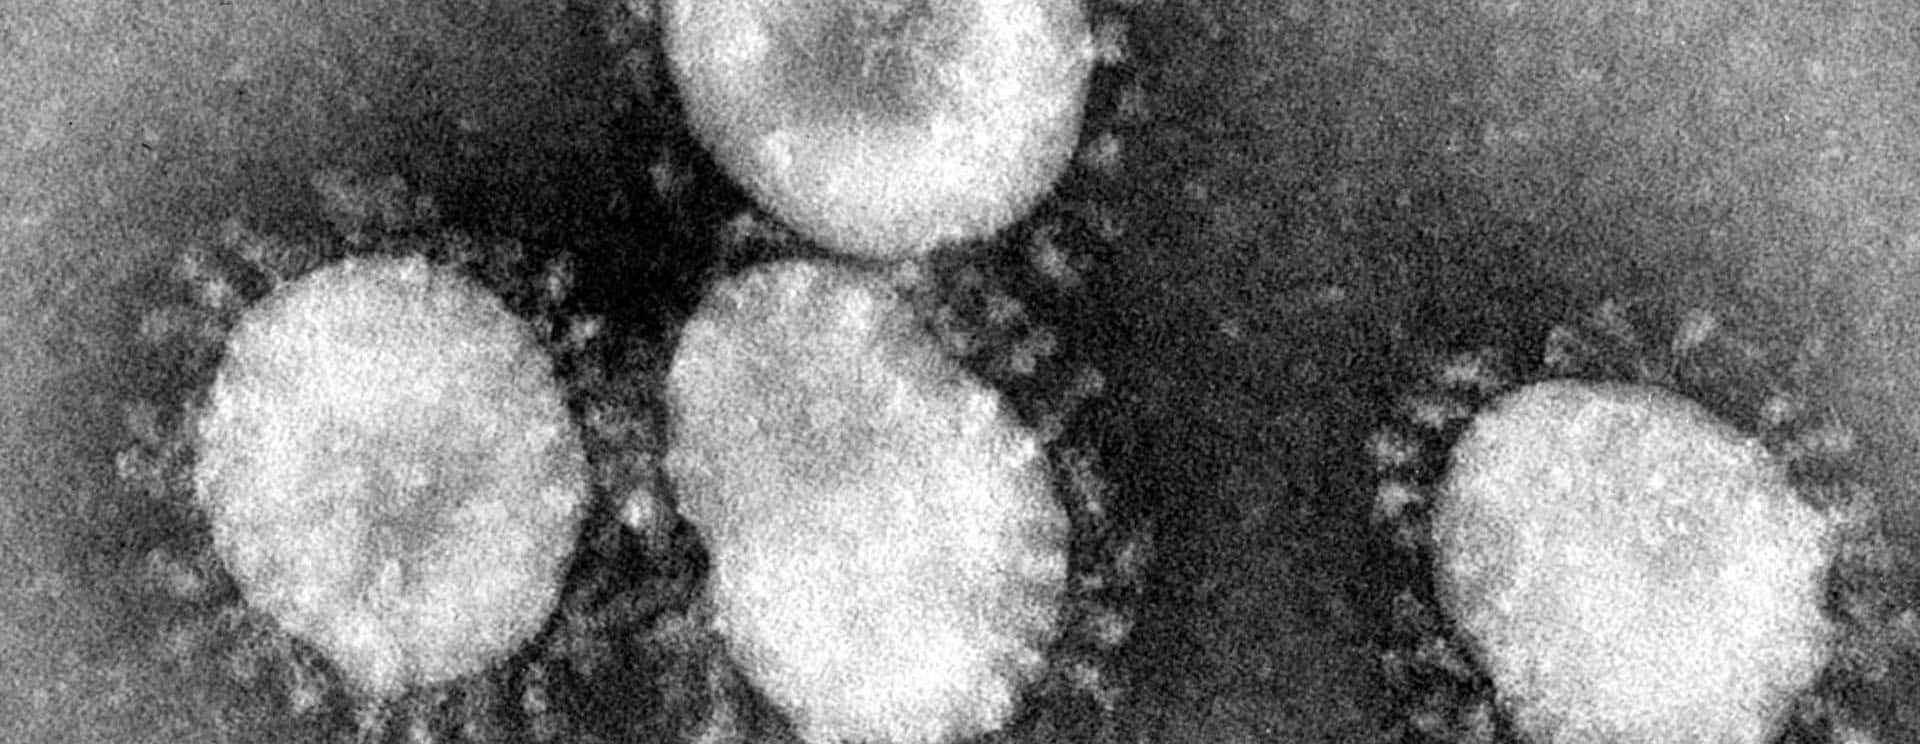 coronaviruses-jpg-22